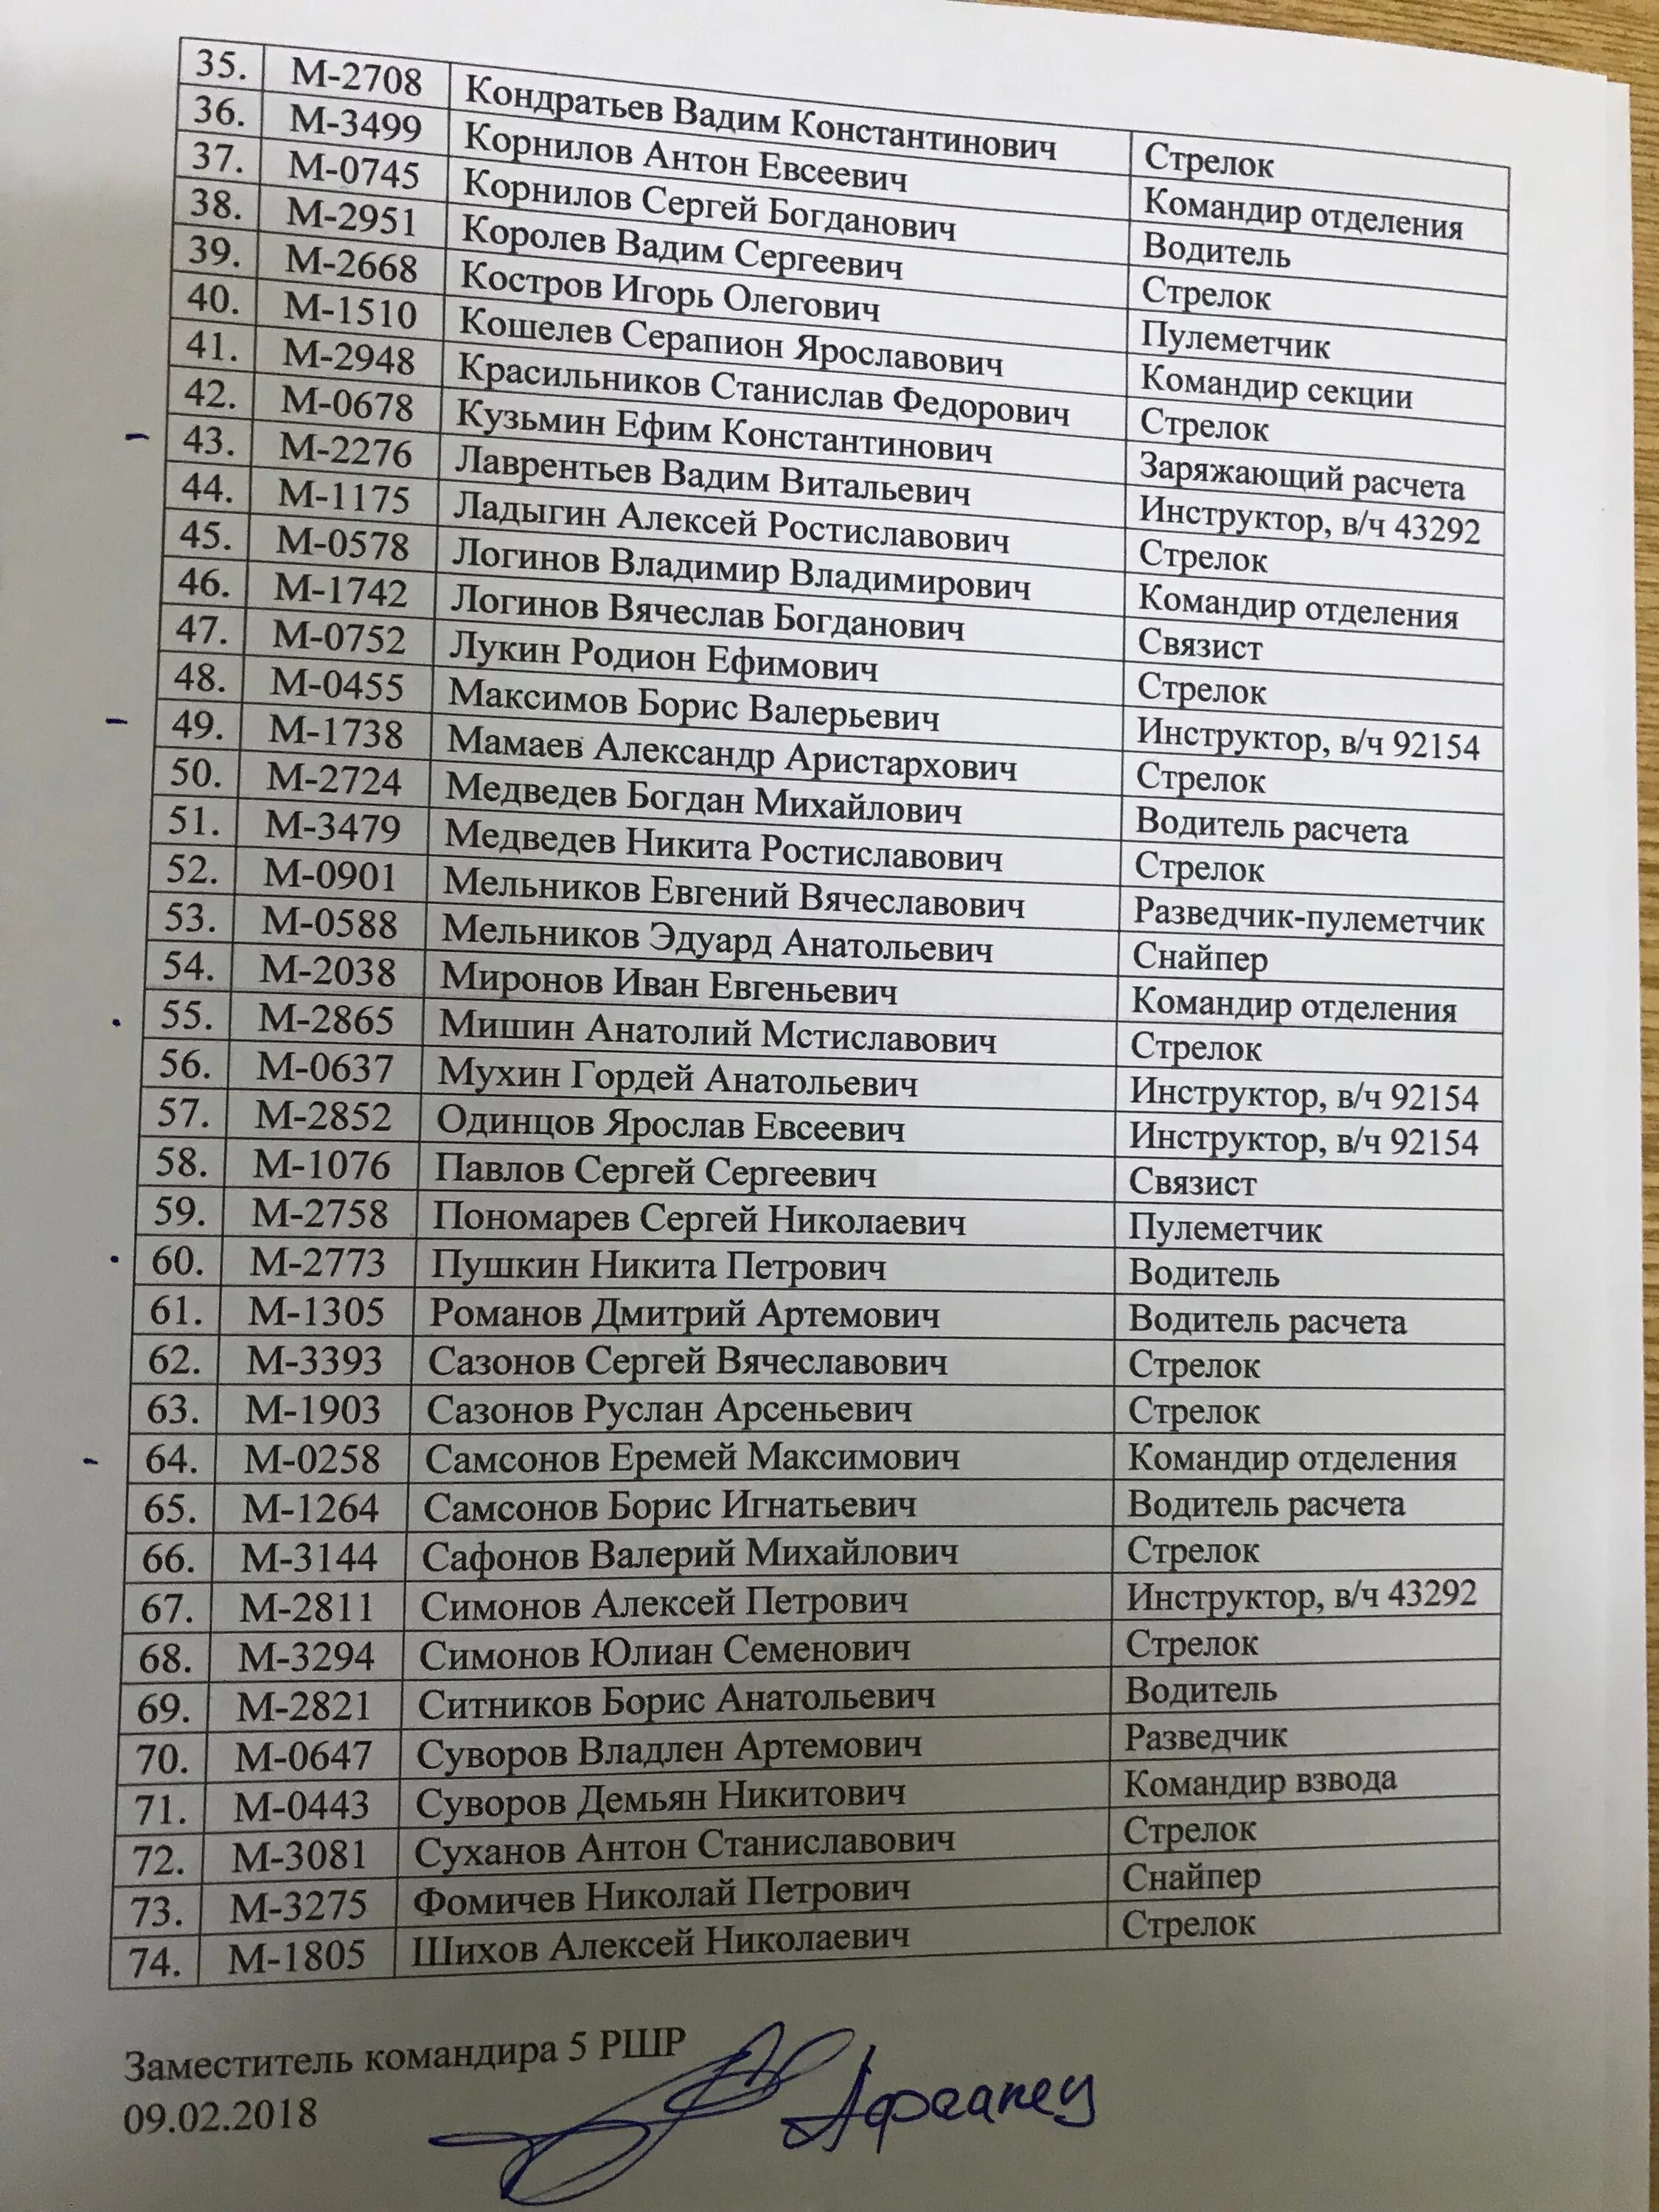 Список пропавших. Список погибших русских военных. Список безвести пропавших.